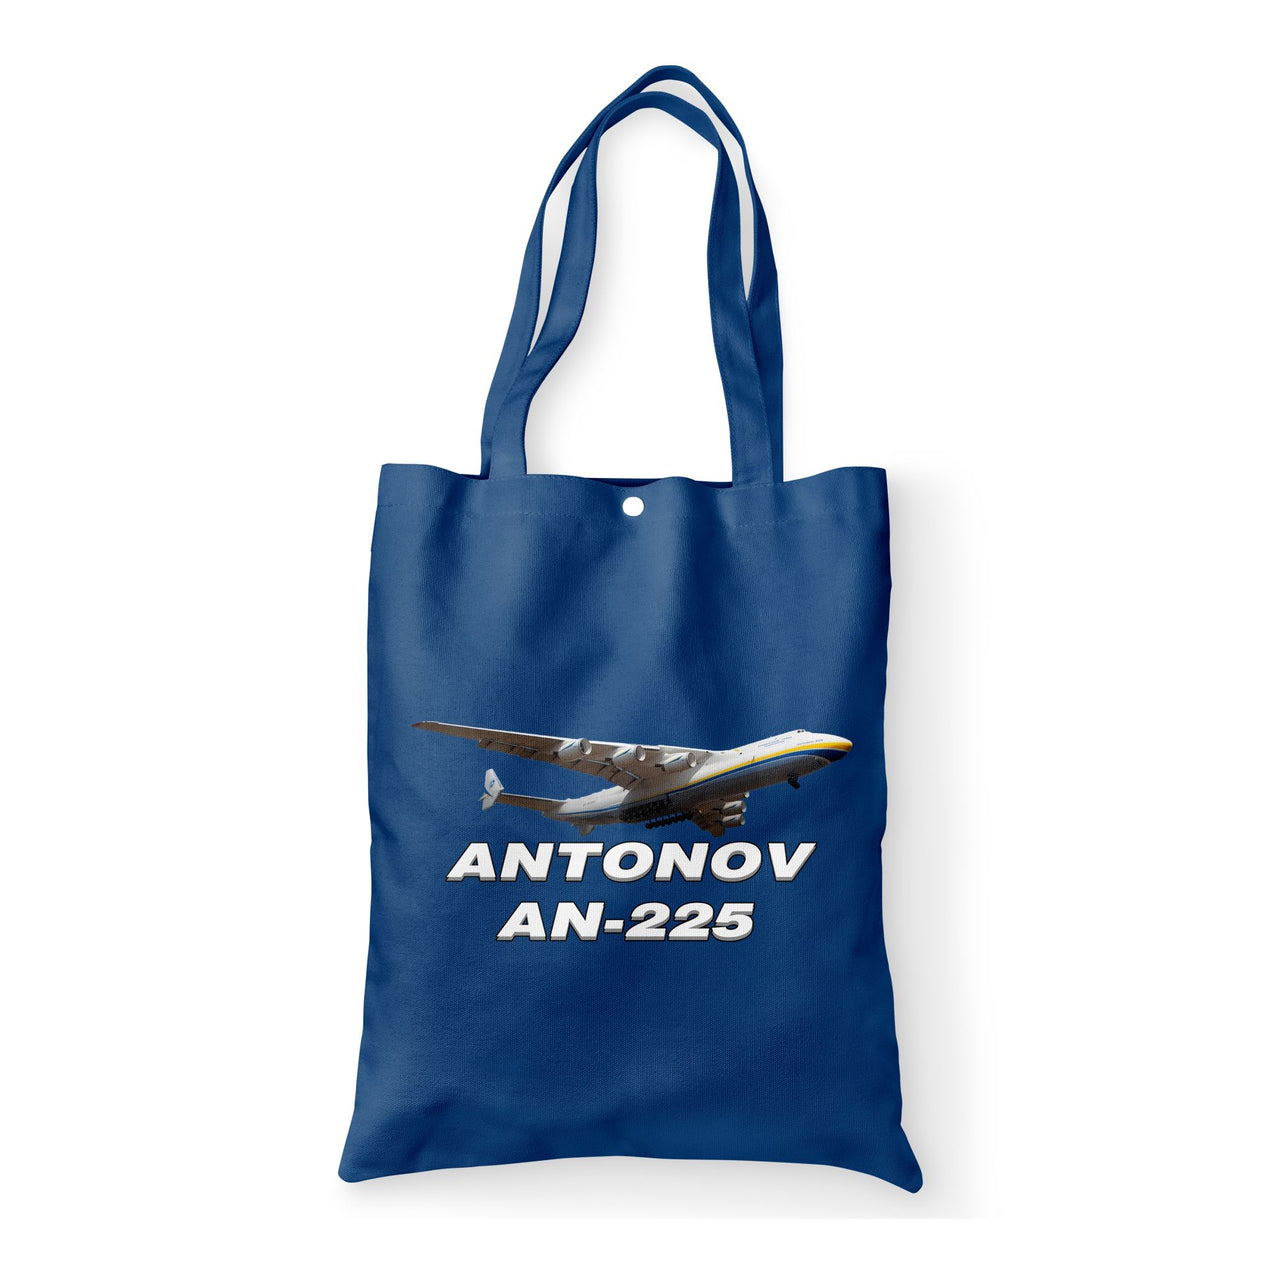 Antonov AN-225 (15) Designed Tote Bags